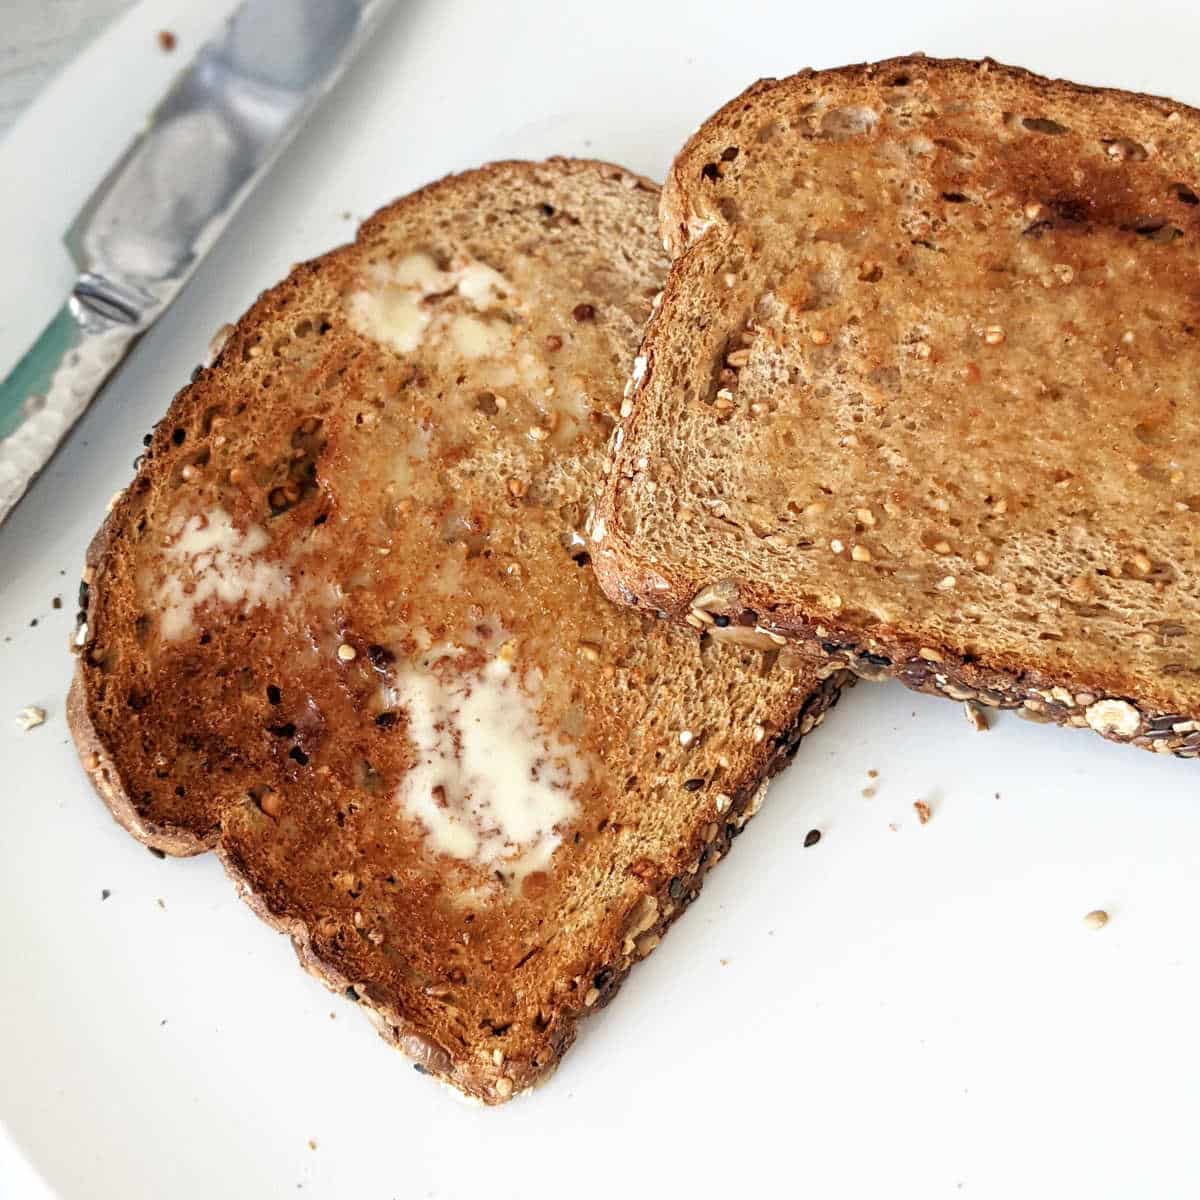 Air Fryer Toast — Toast Bread in Air Fryer Easily!